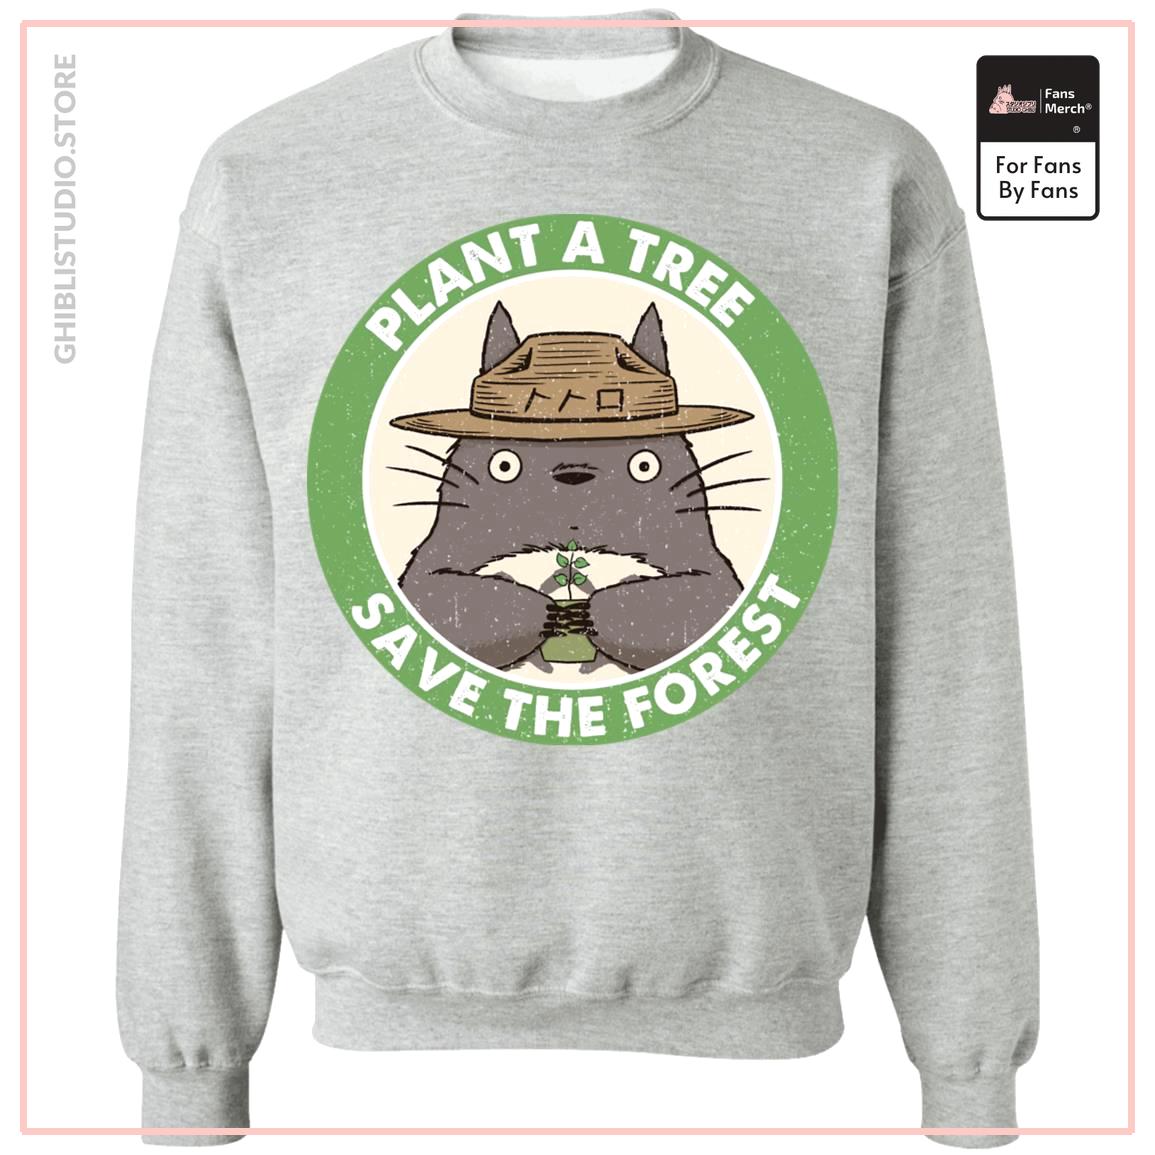 My Neighbor Totoro - Pflanzen Sie einen Baum Save the Forest Sweatshirt